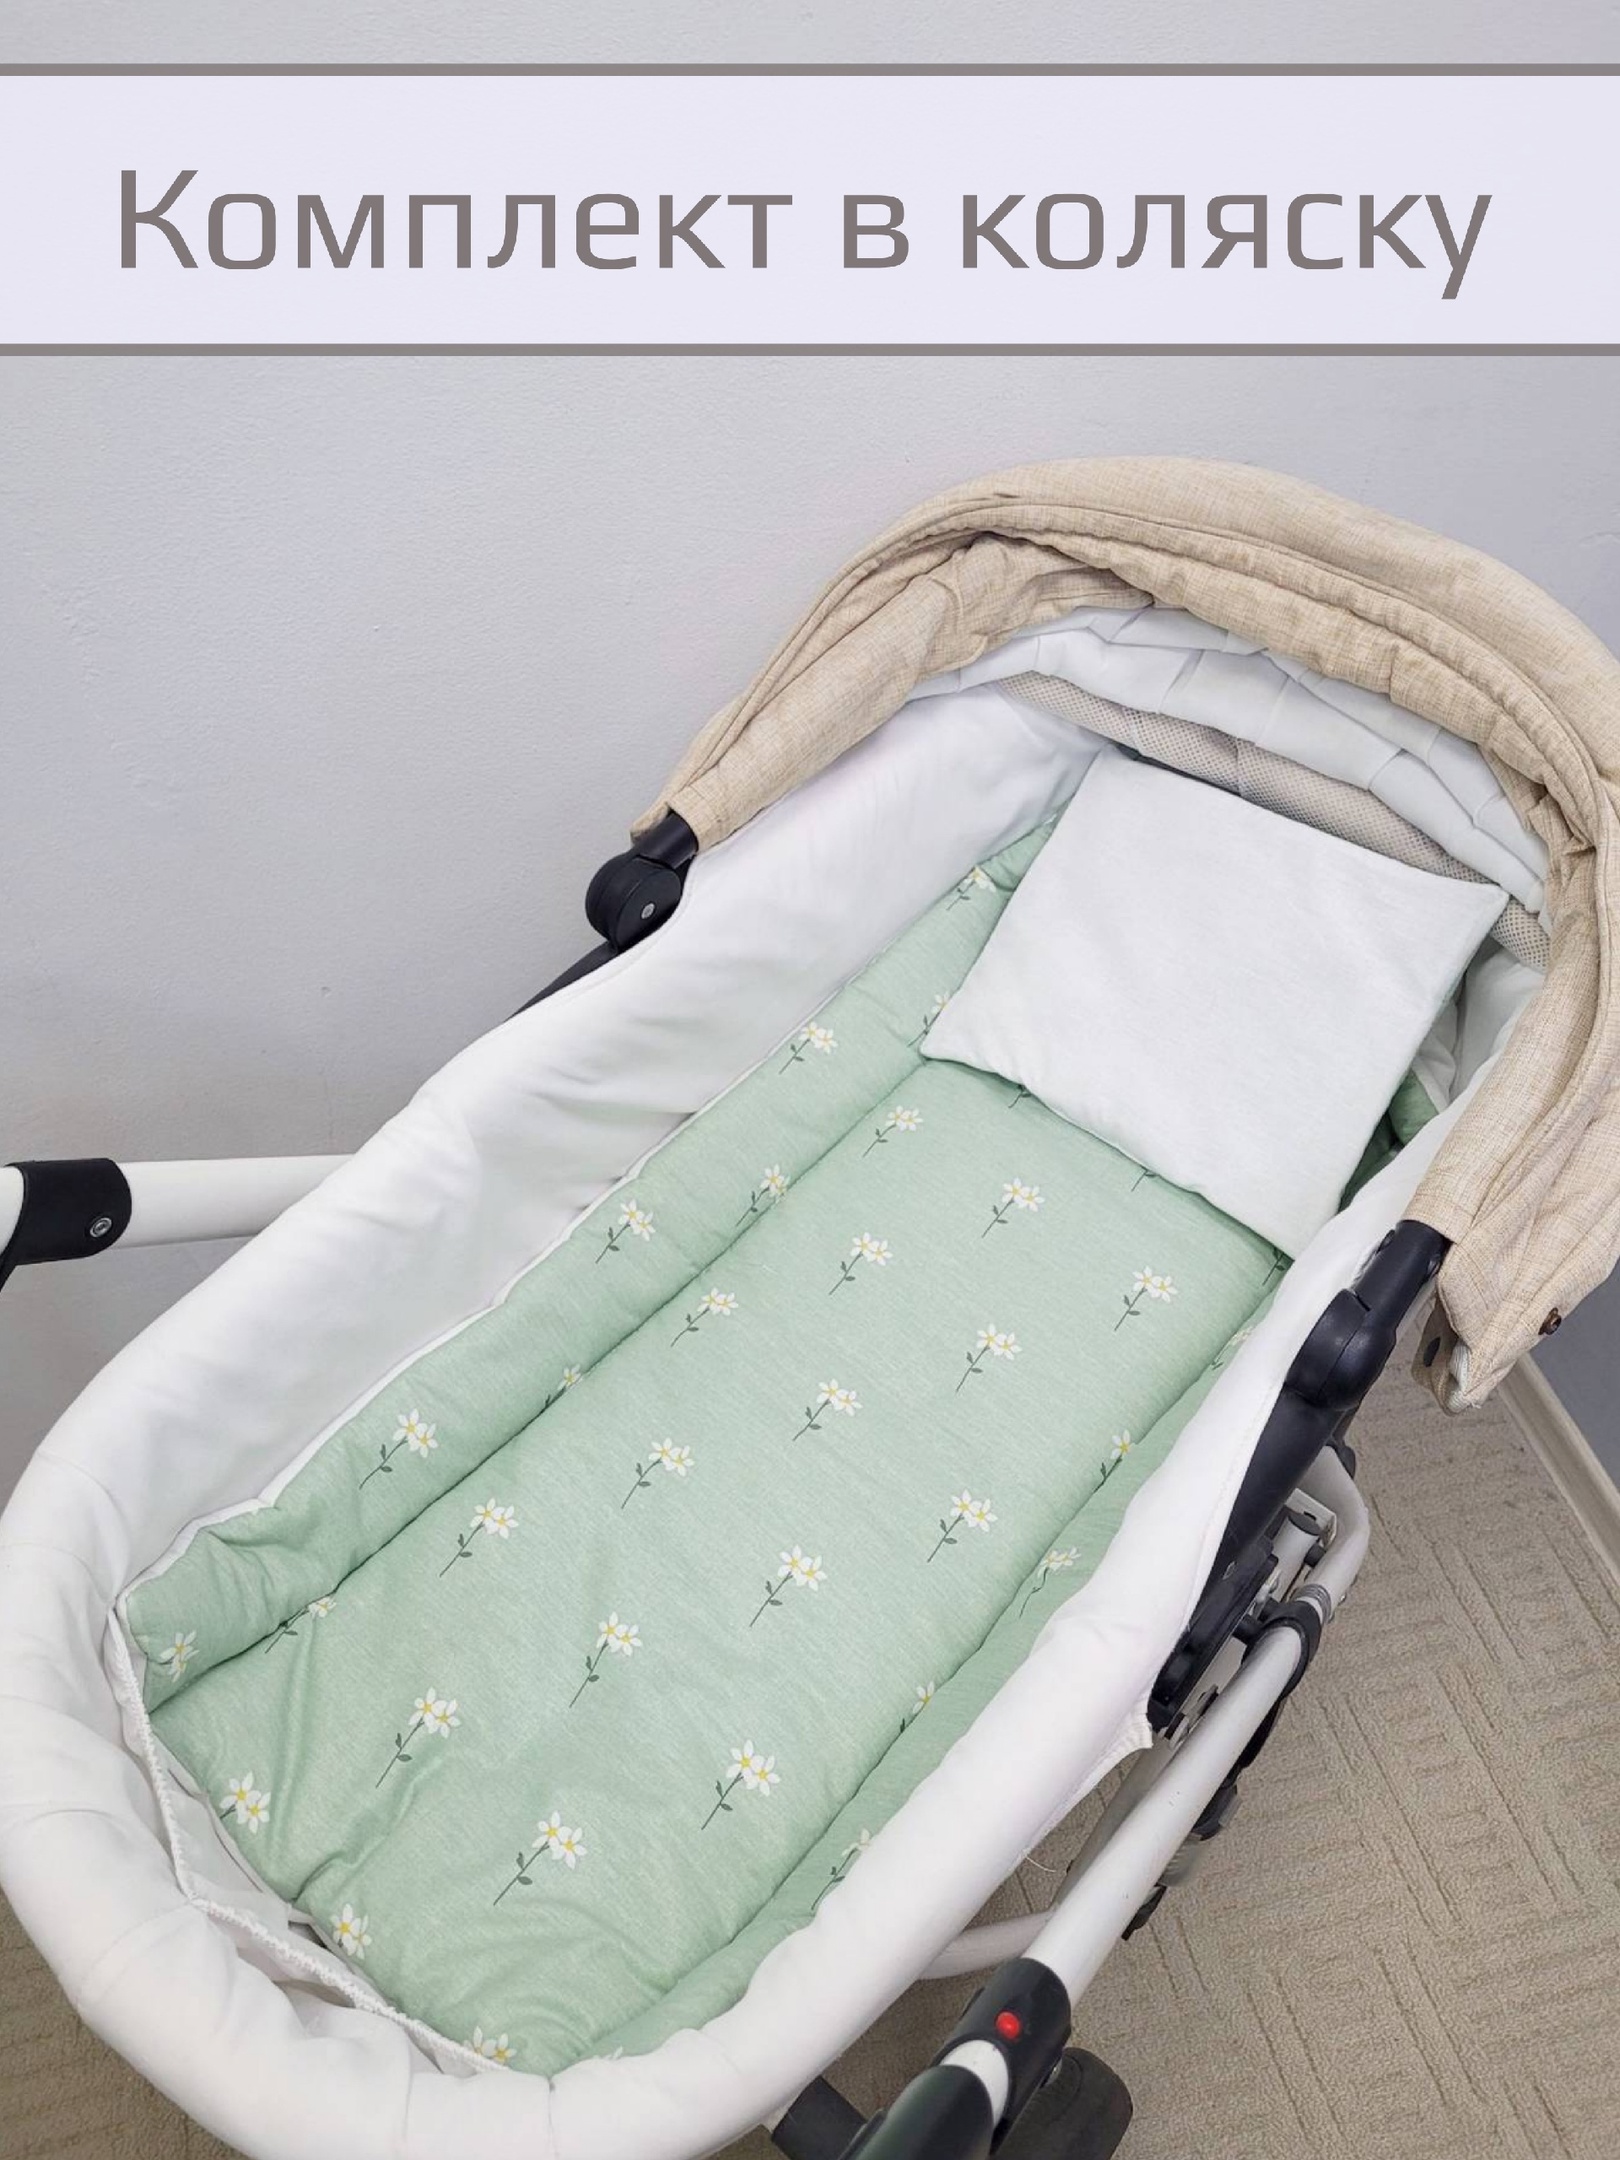 Комплект в коляску Матрасик, подушка Ромашки на зелёном 40*80см, подушка